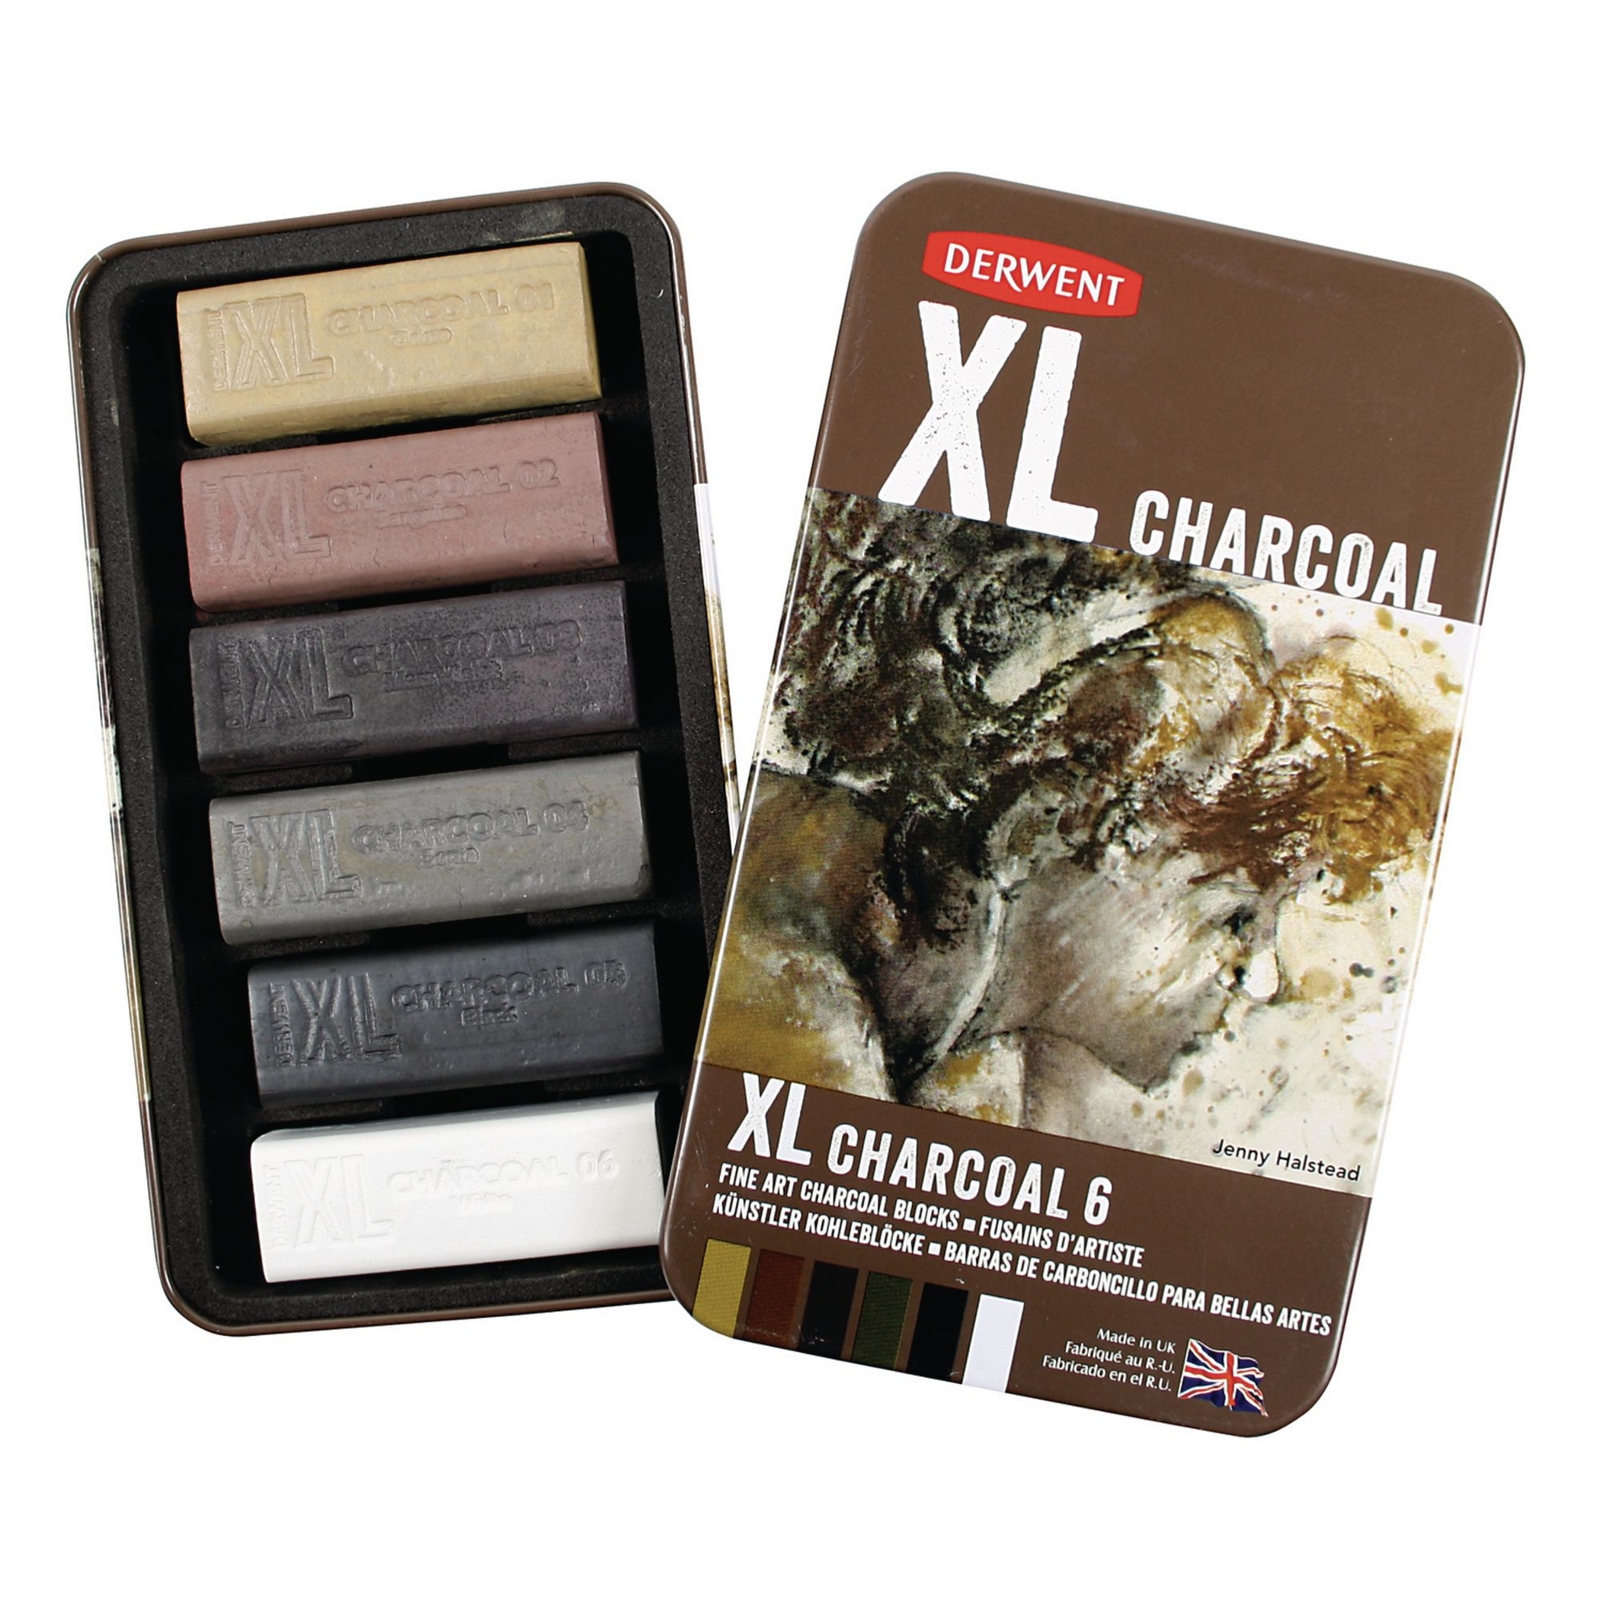 Derwent XL Charcoal Assortment